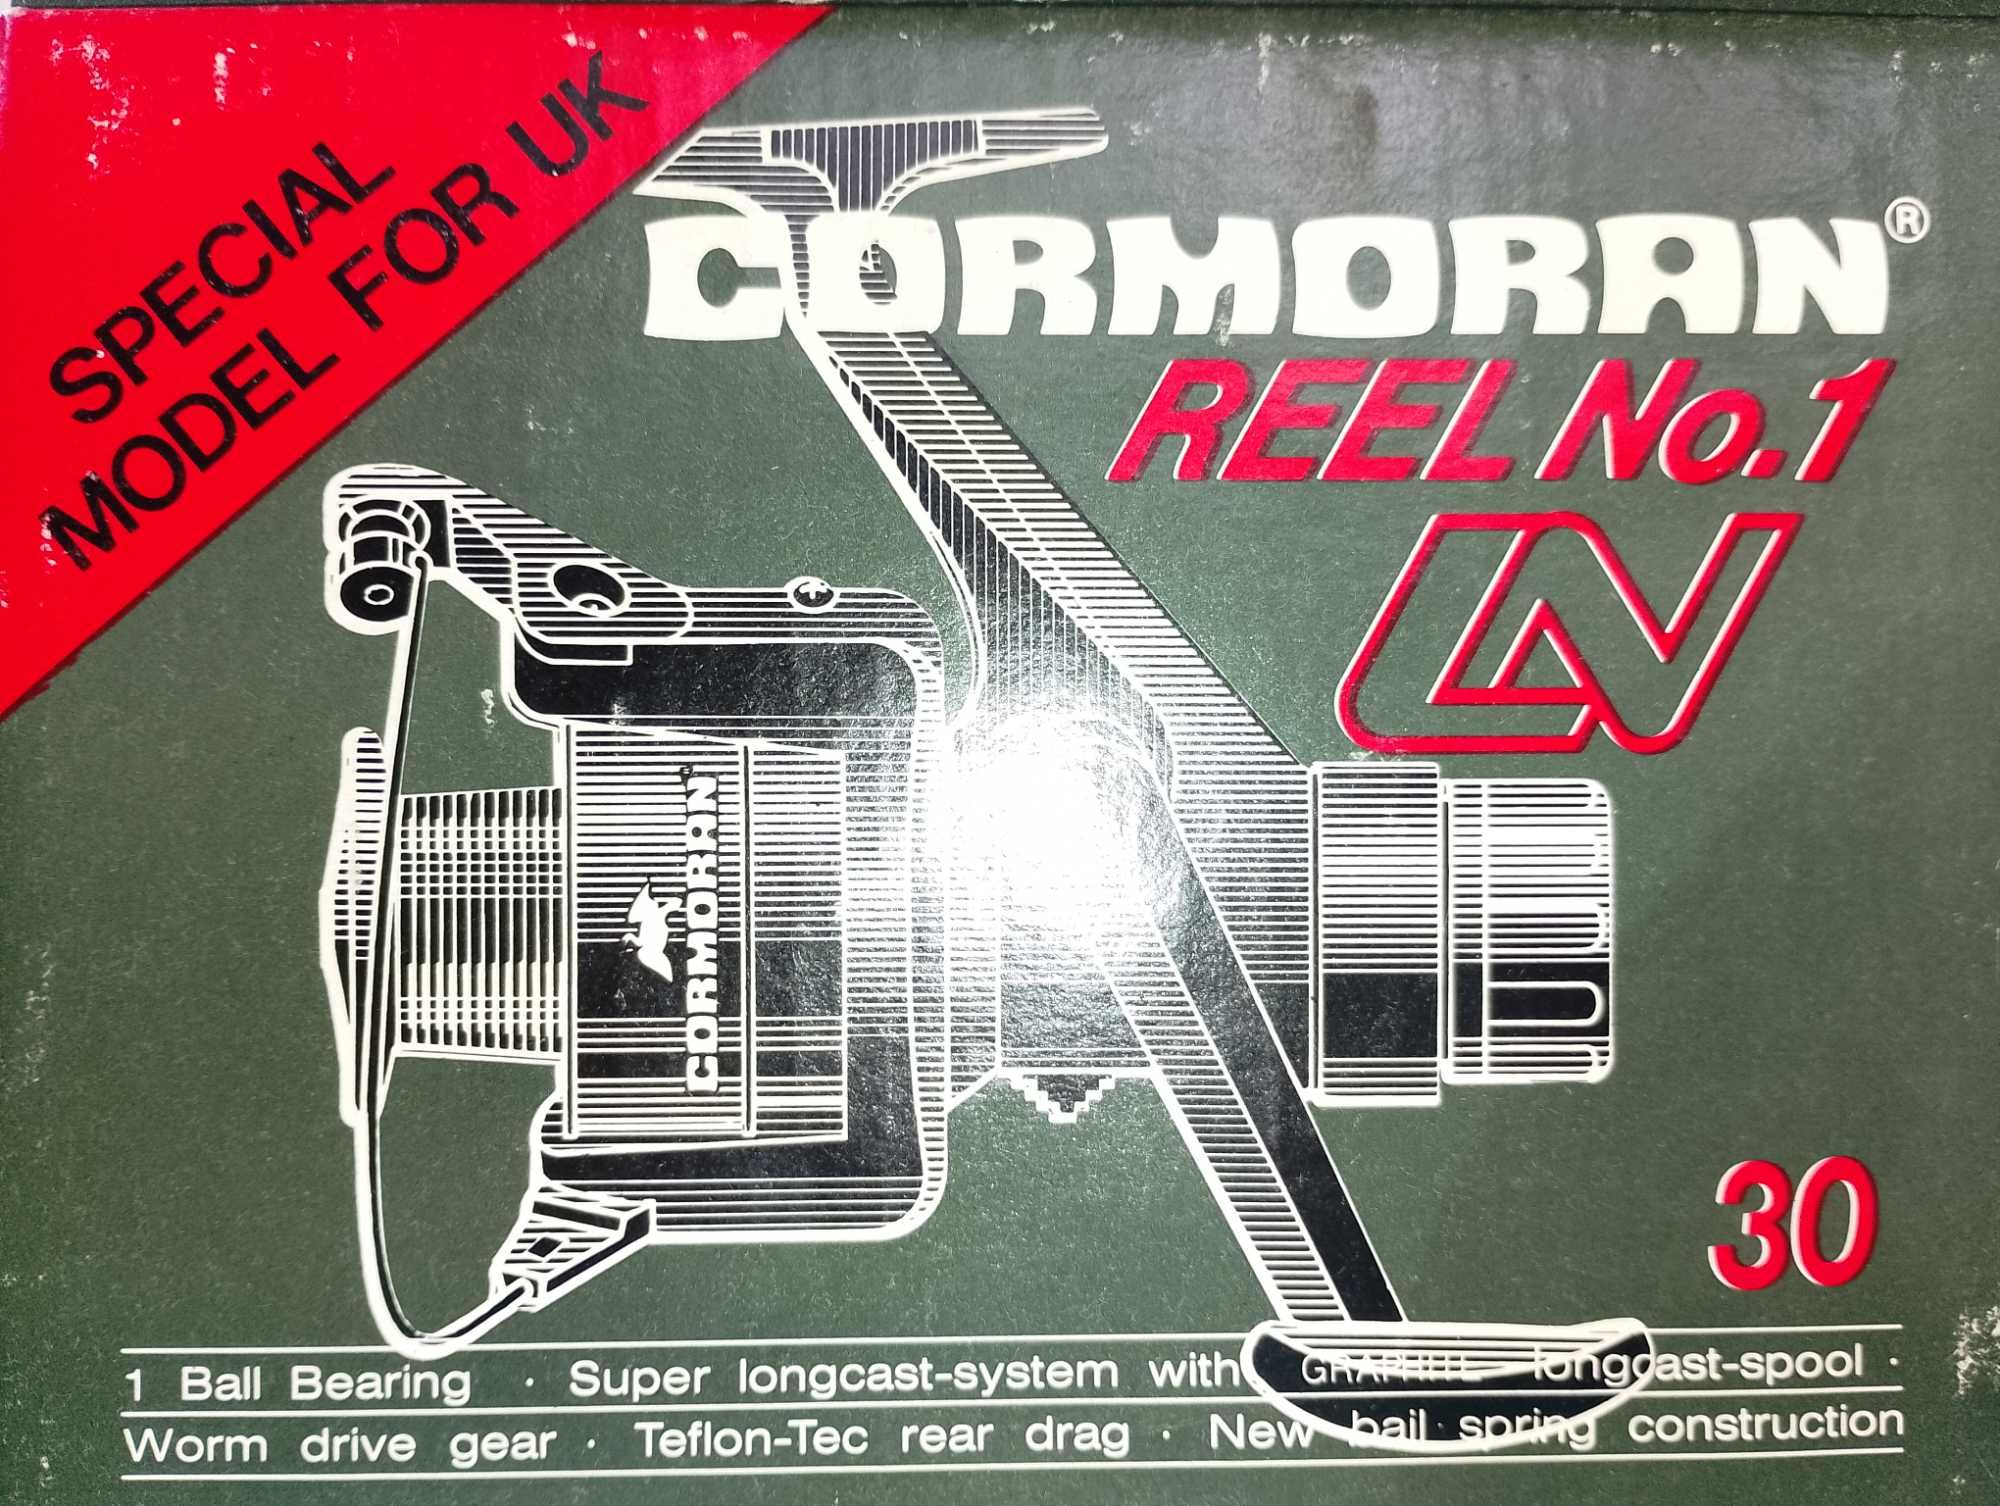 Kolowrotek Cormoran LN 30 Model for UK